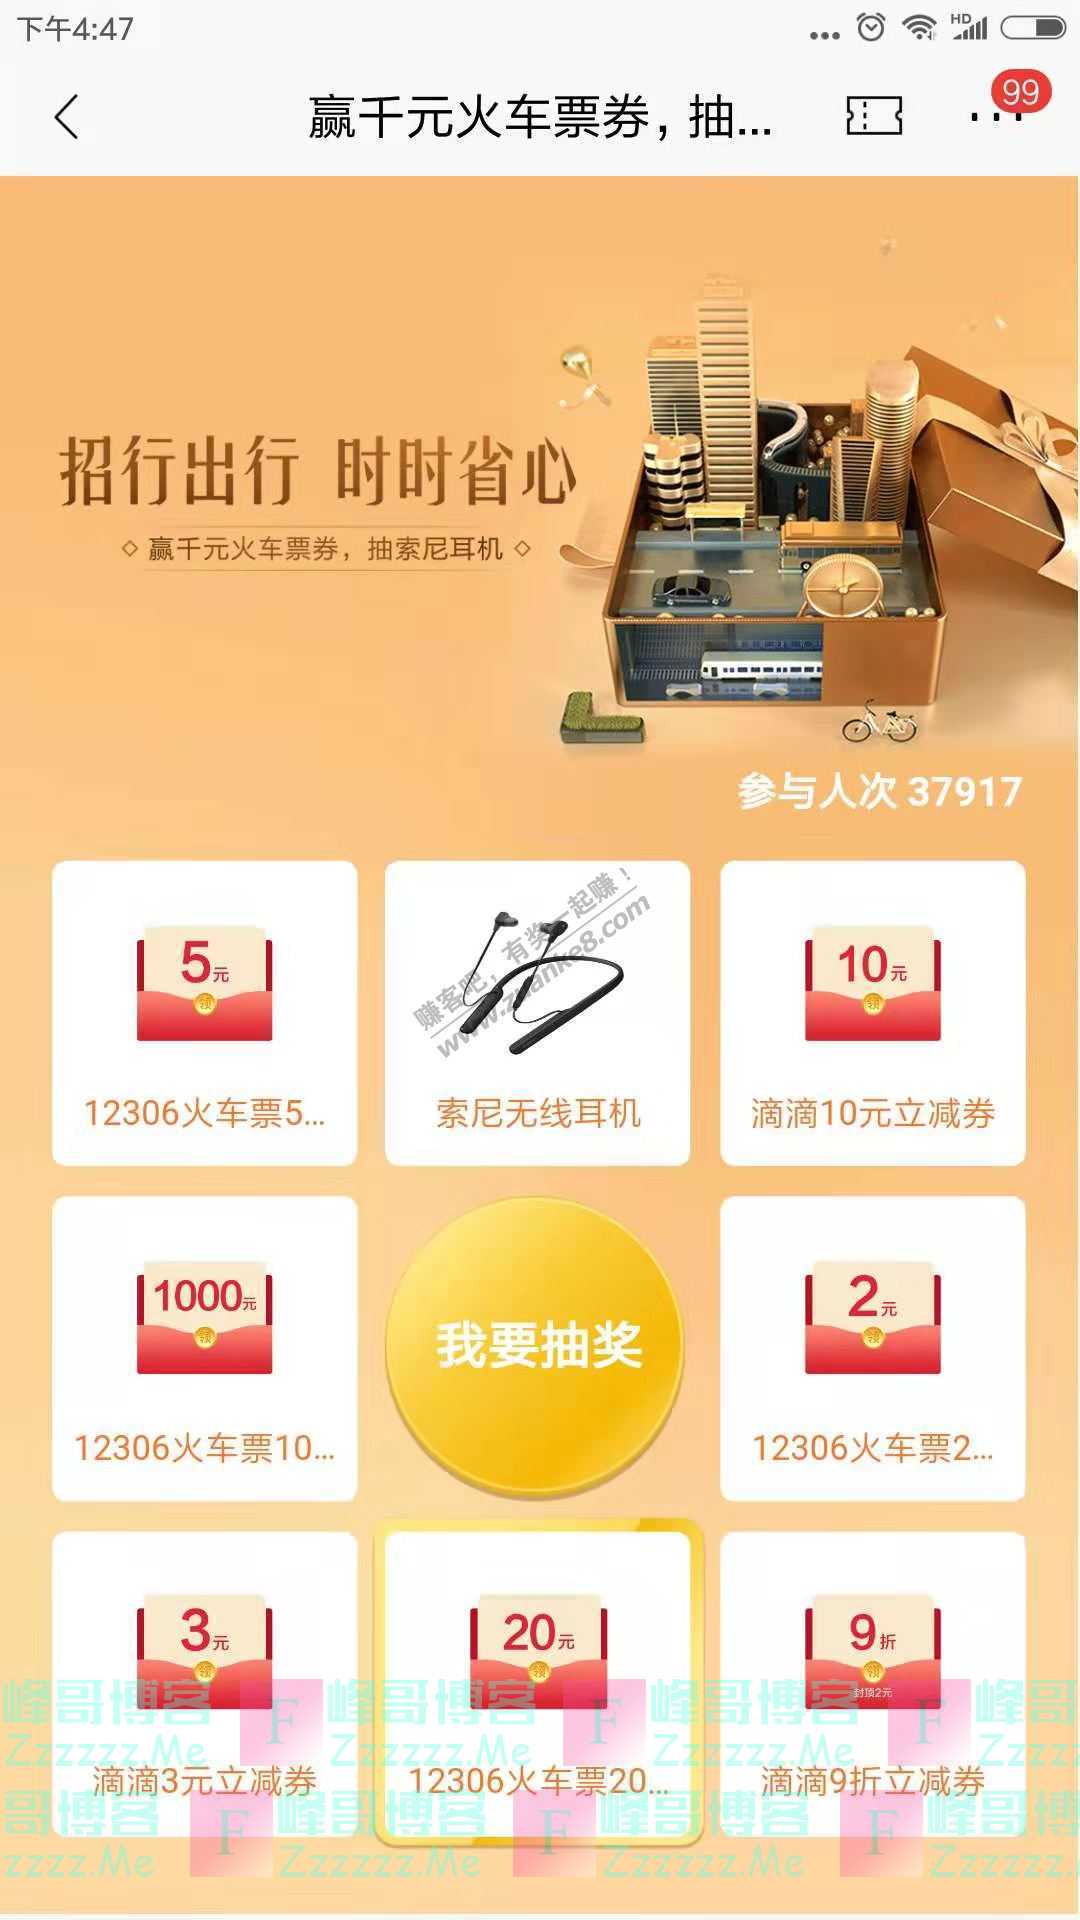 招商银行app赢千元火车票券 抽索尼耳机（截止1月31日）